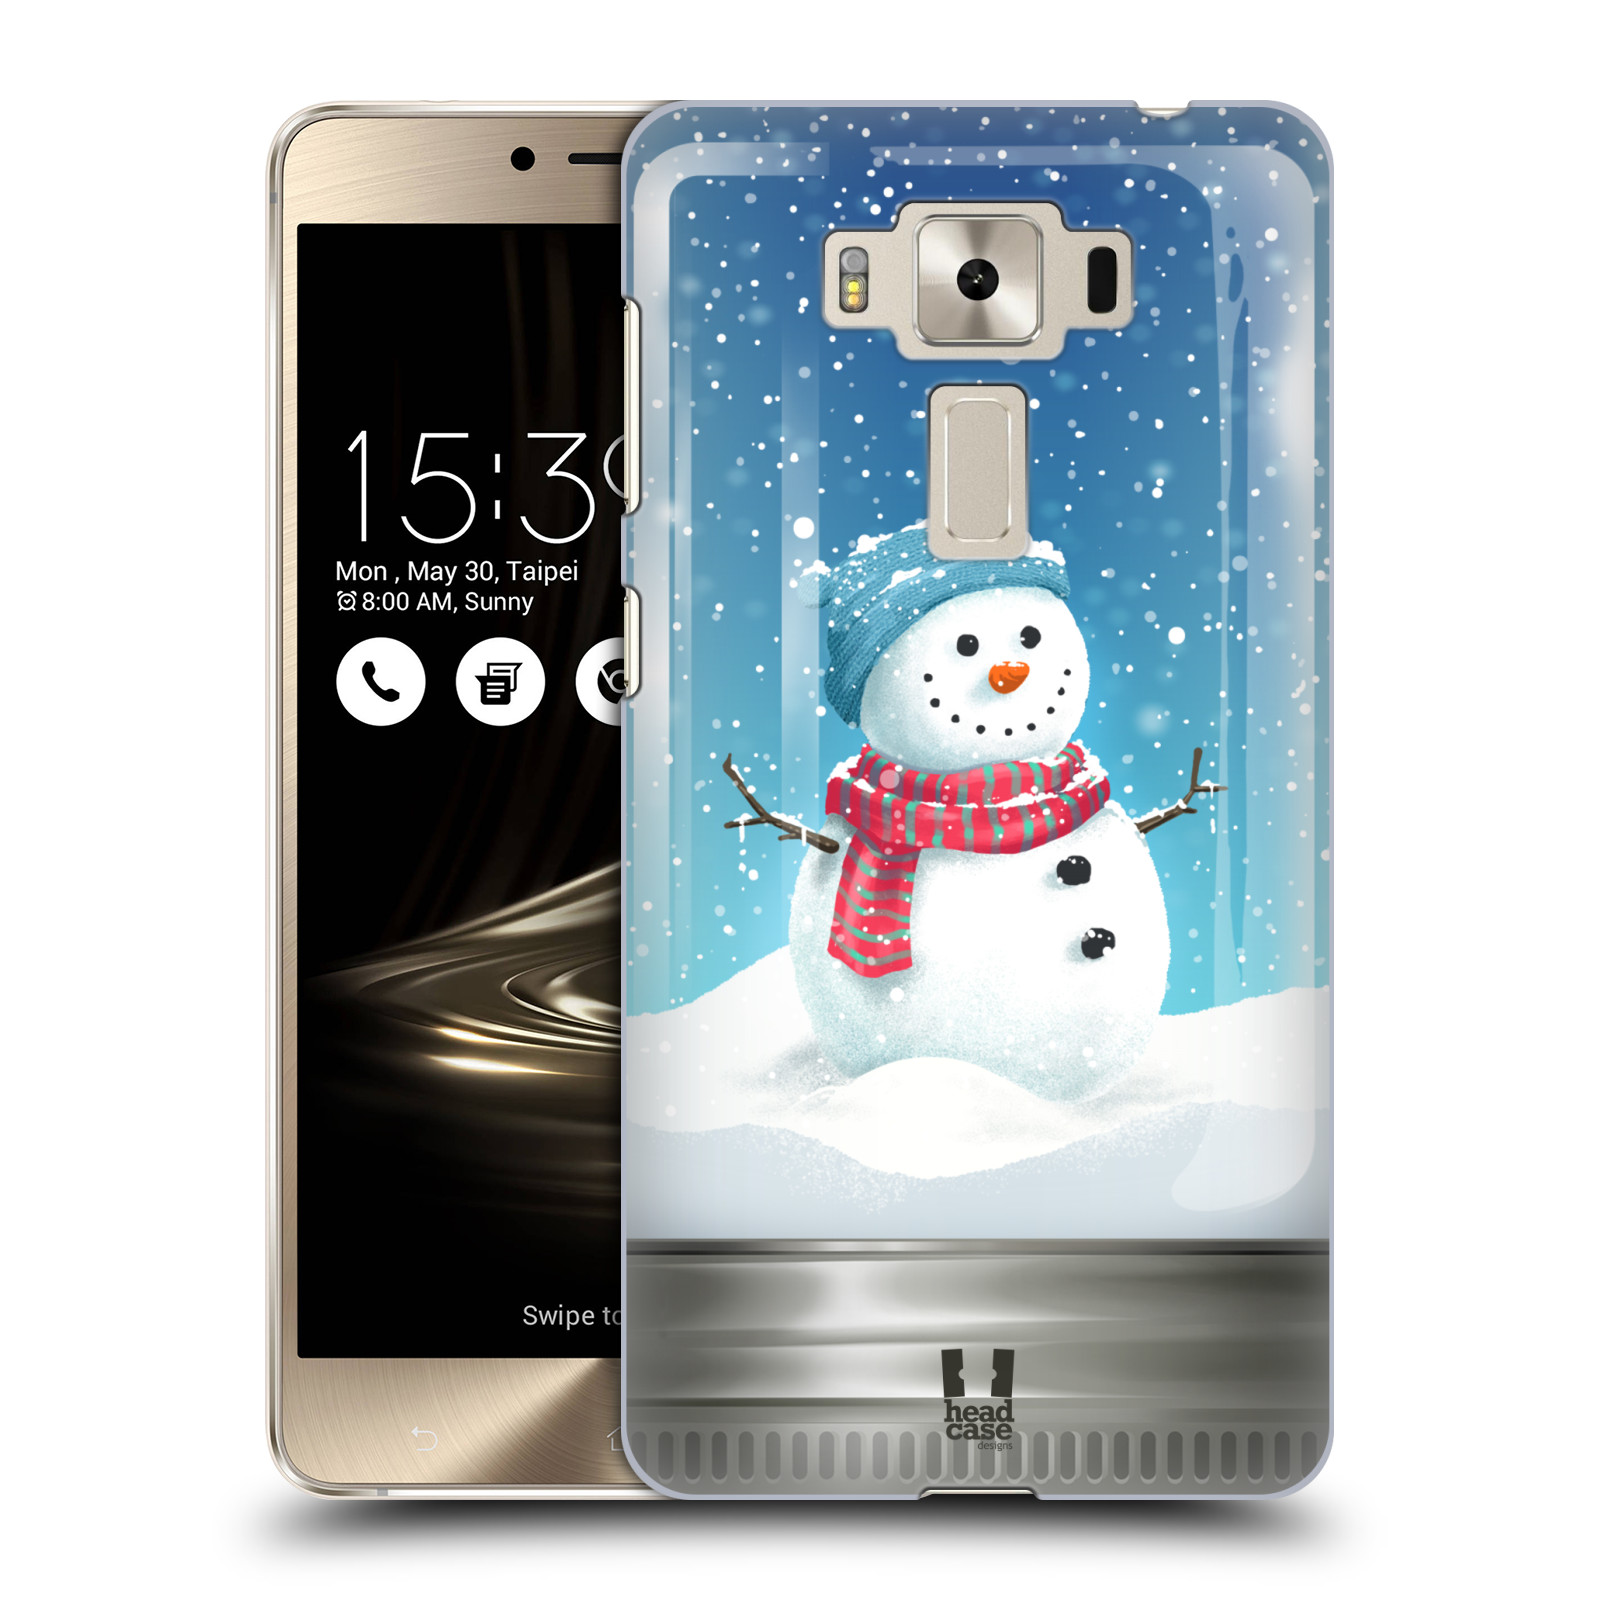 HEAD CASE plastový obal na mobil Asus Zenfone 3 DELUXE ZS550KL vzor Vánoce v těžítku SNĚHULÁK